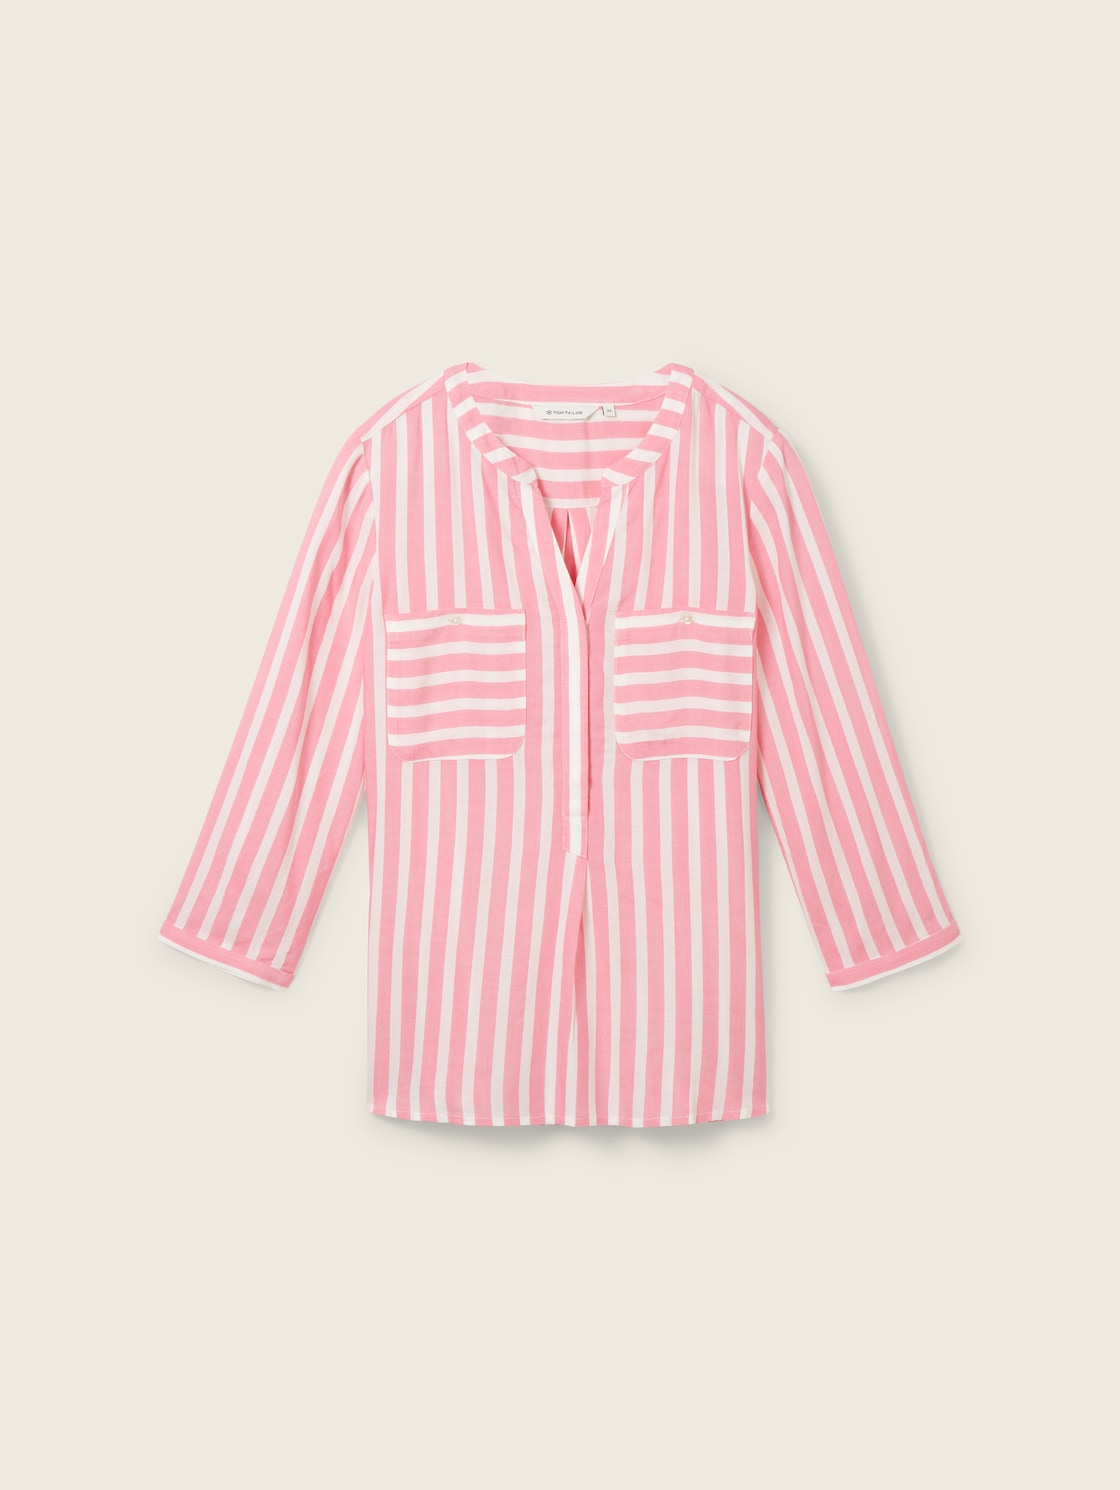 TOM TAILOR Damen Gestreifte Bluse mit Taschen, rosa, Streifenmuster, Gr. 34 von Tom Tailor